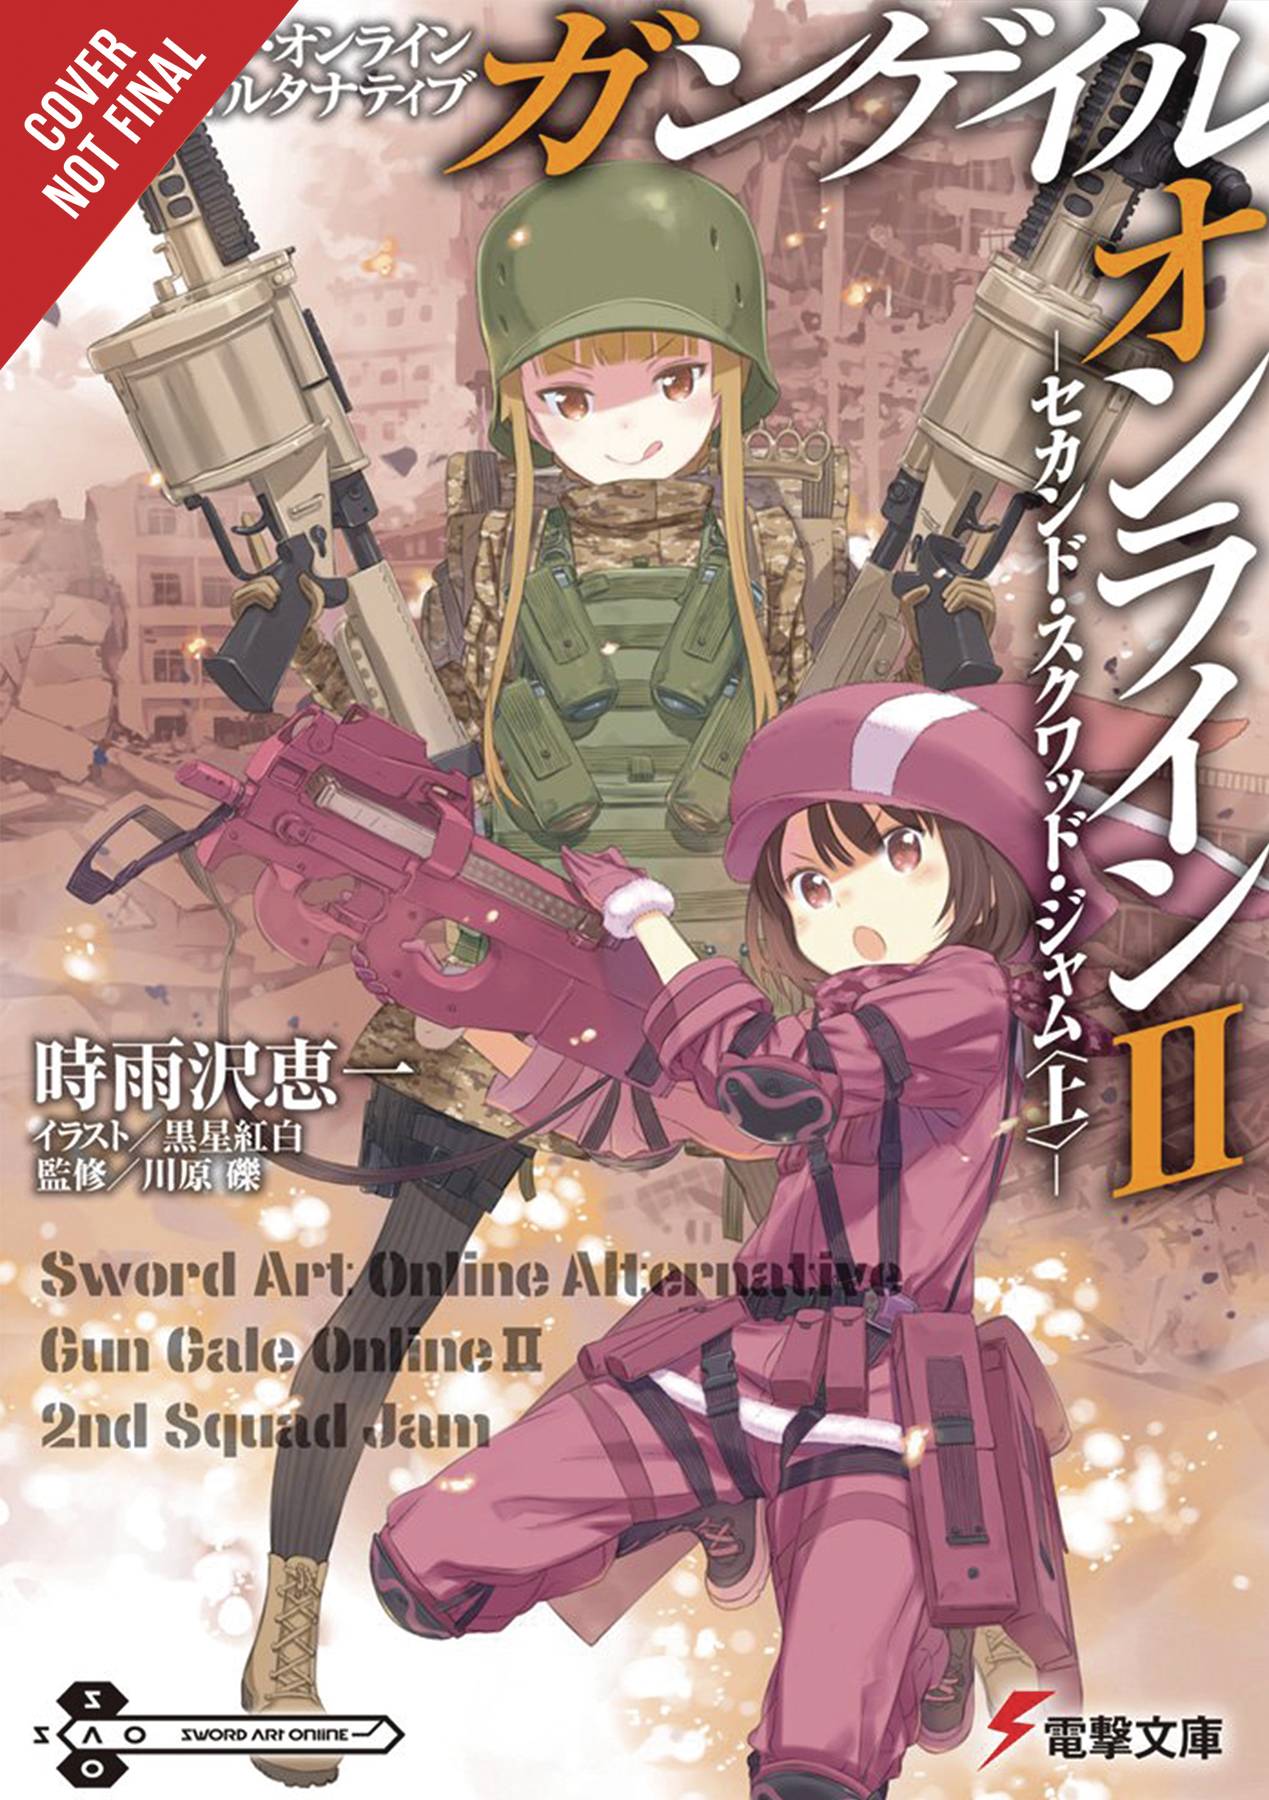 Sword Art Online Alt Gun Gale Light Novel Volume 2